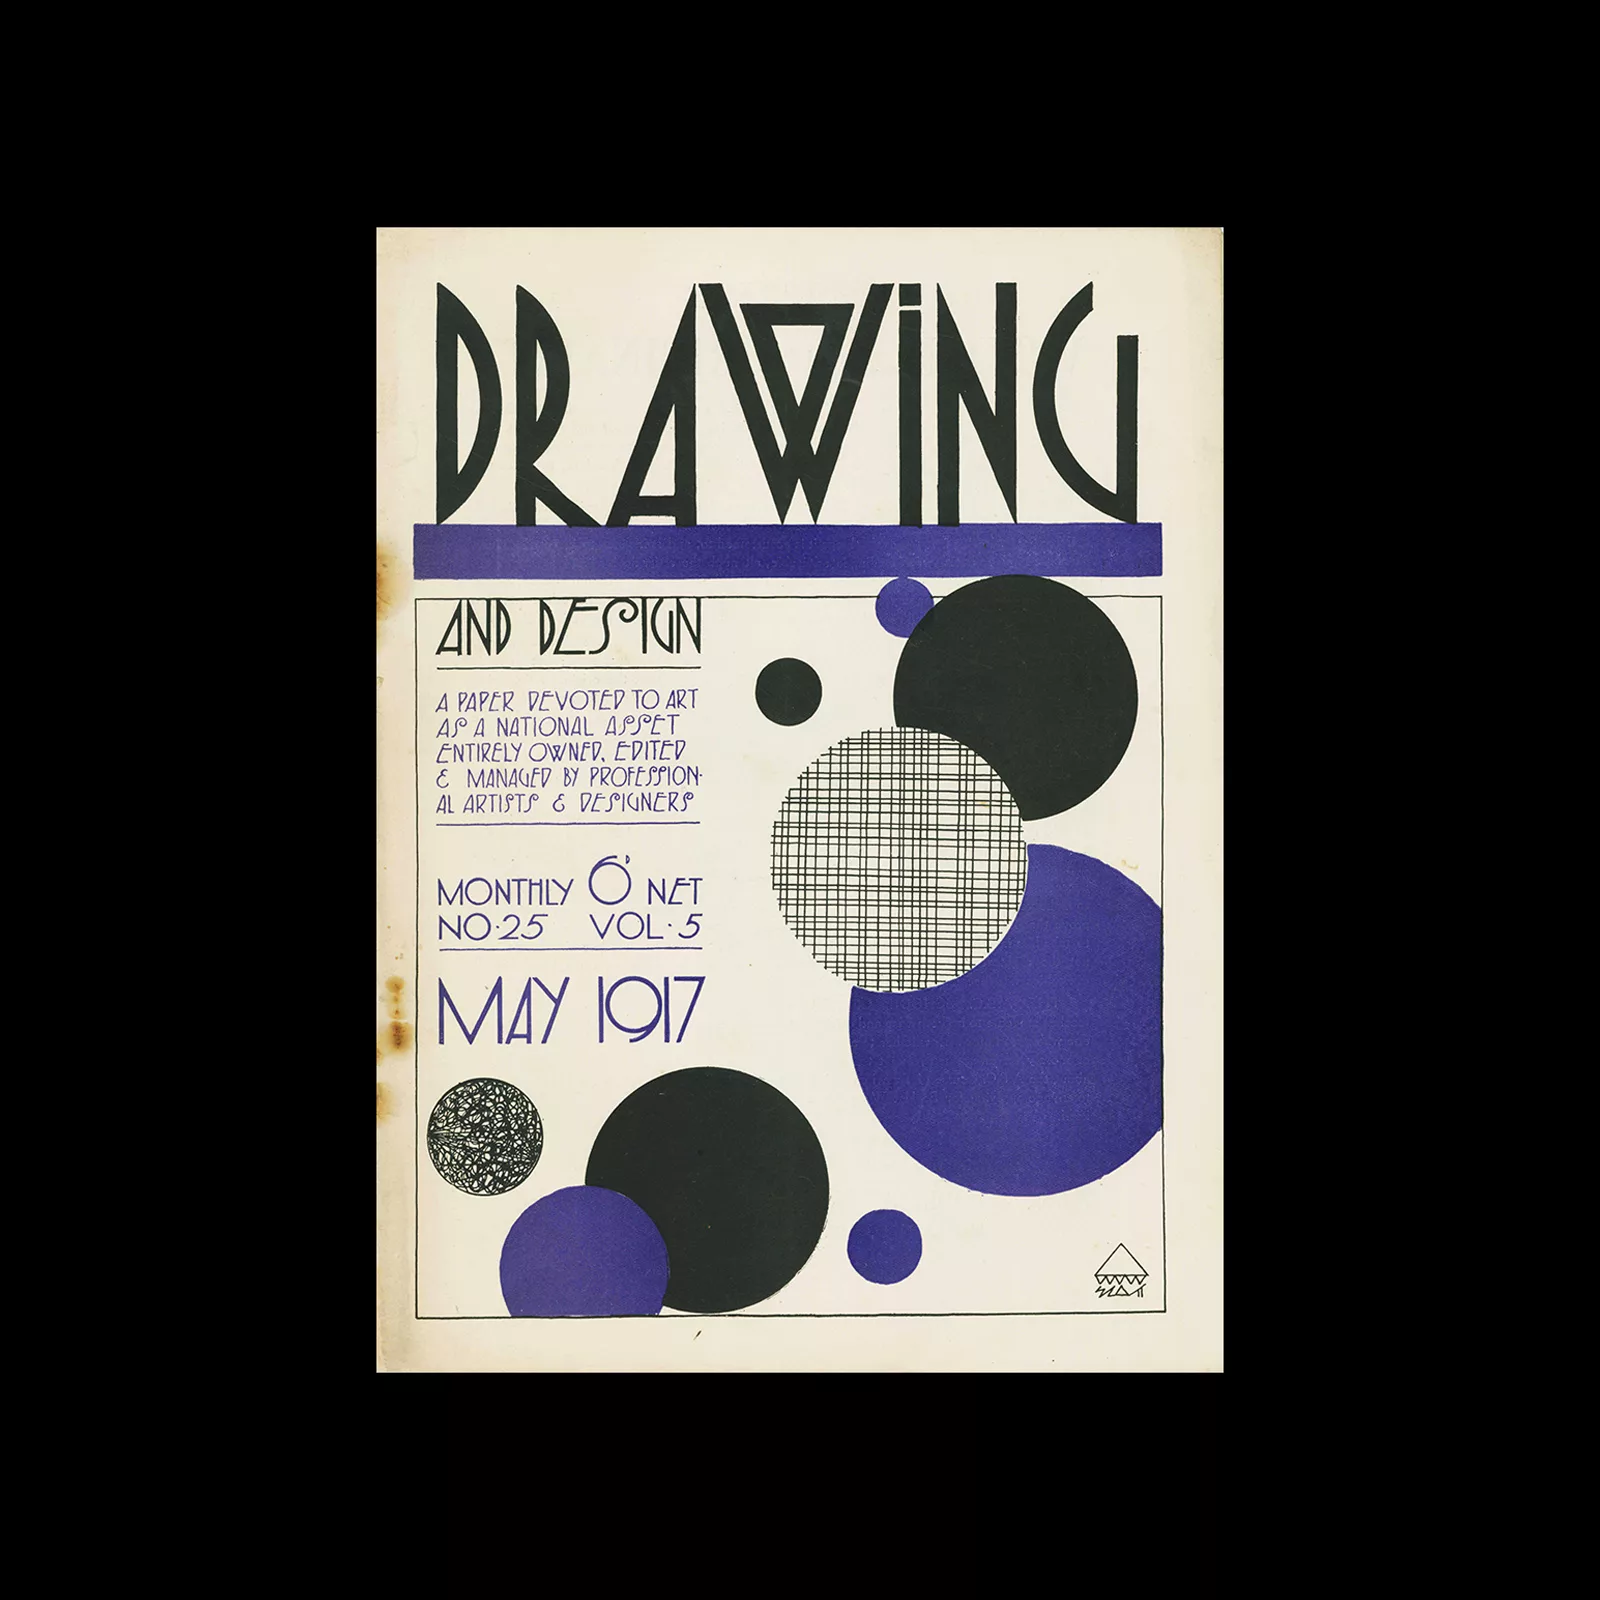 Drawing and Design No 25, Vol 5, May 1917